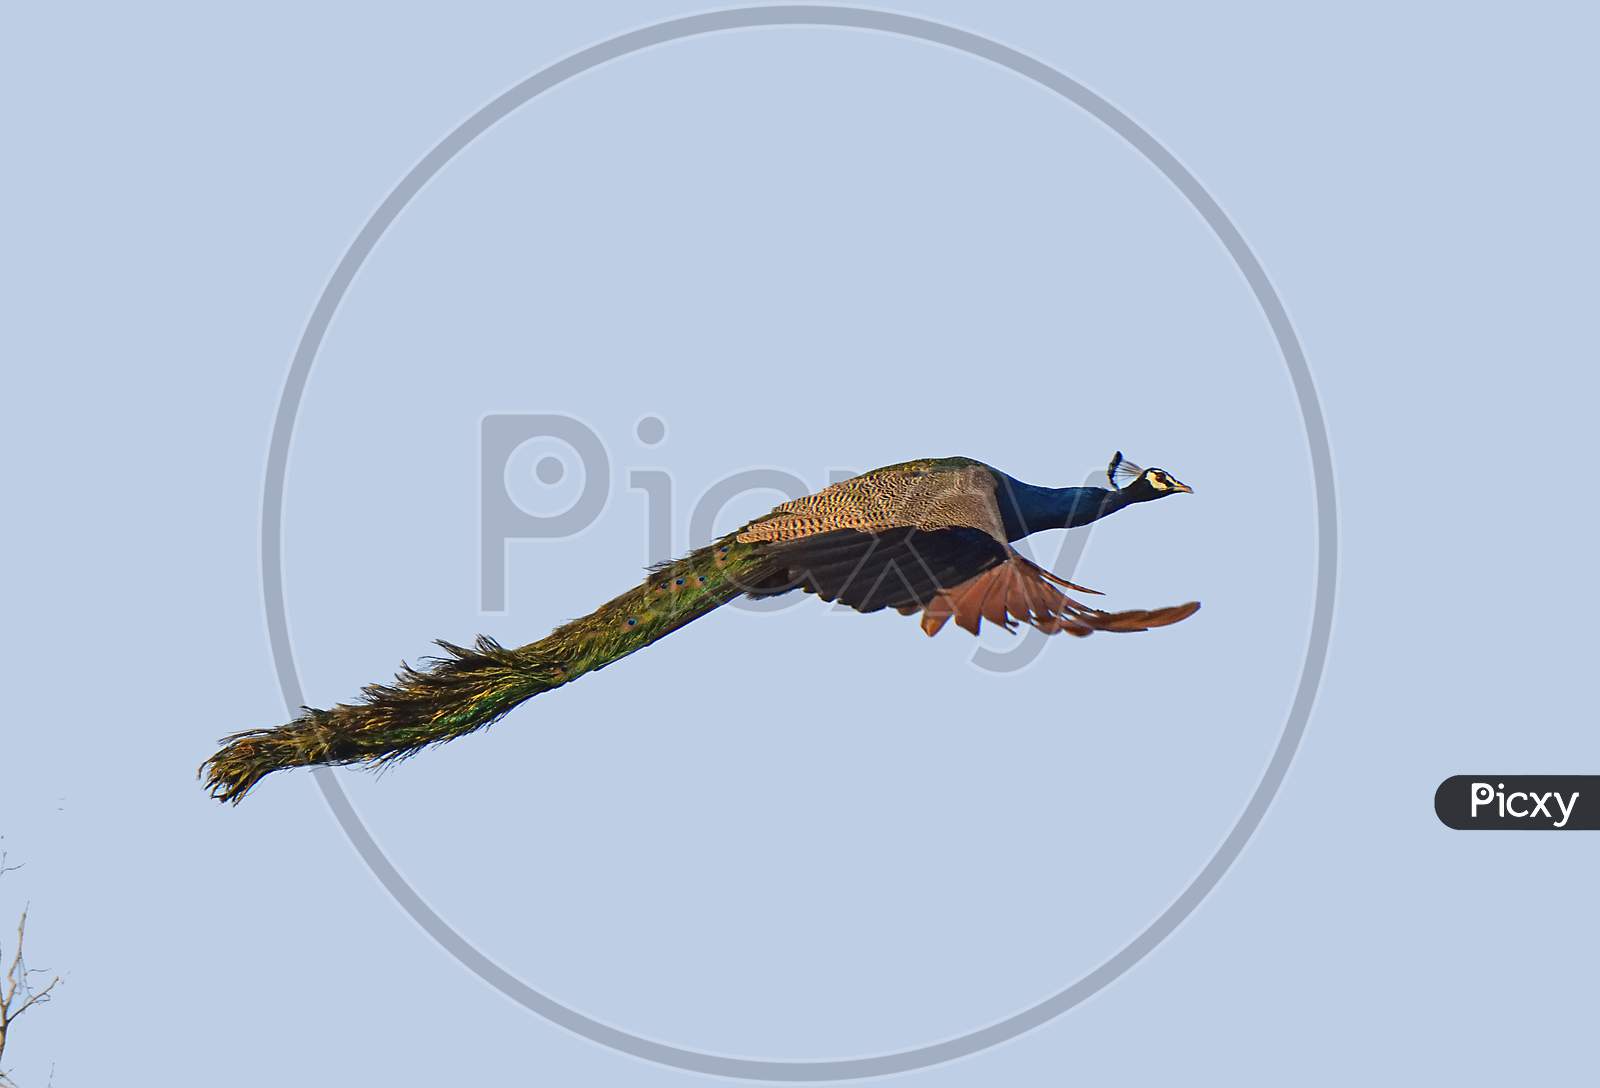 Peacock in flight